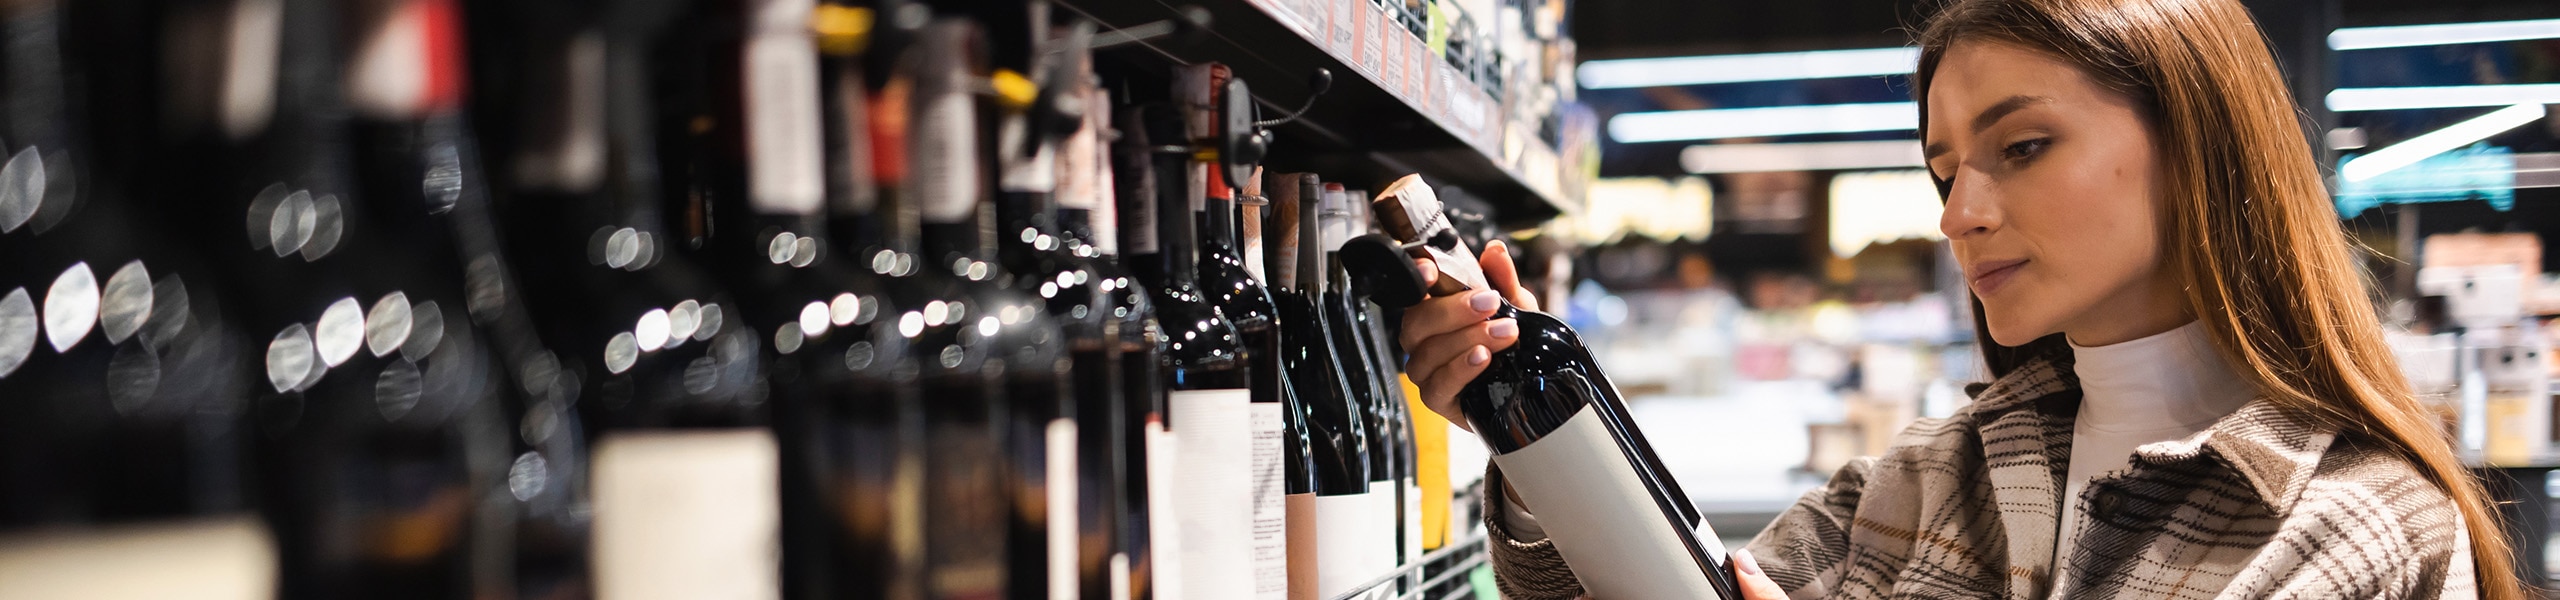 Person reading a wine label in a liquor store